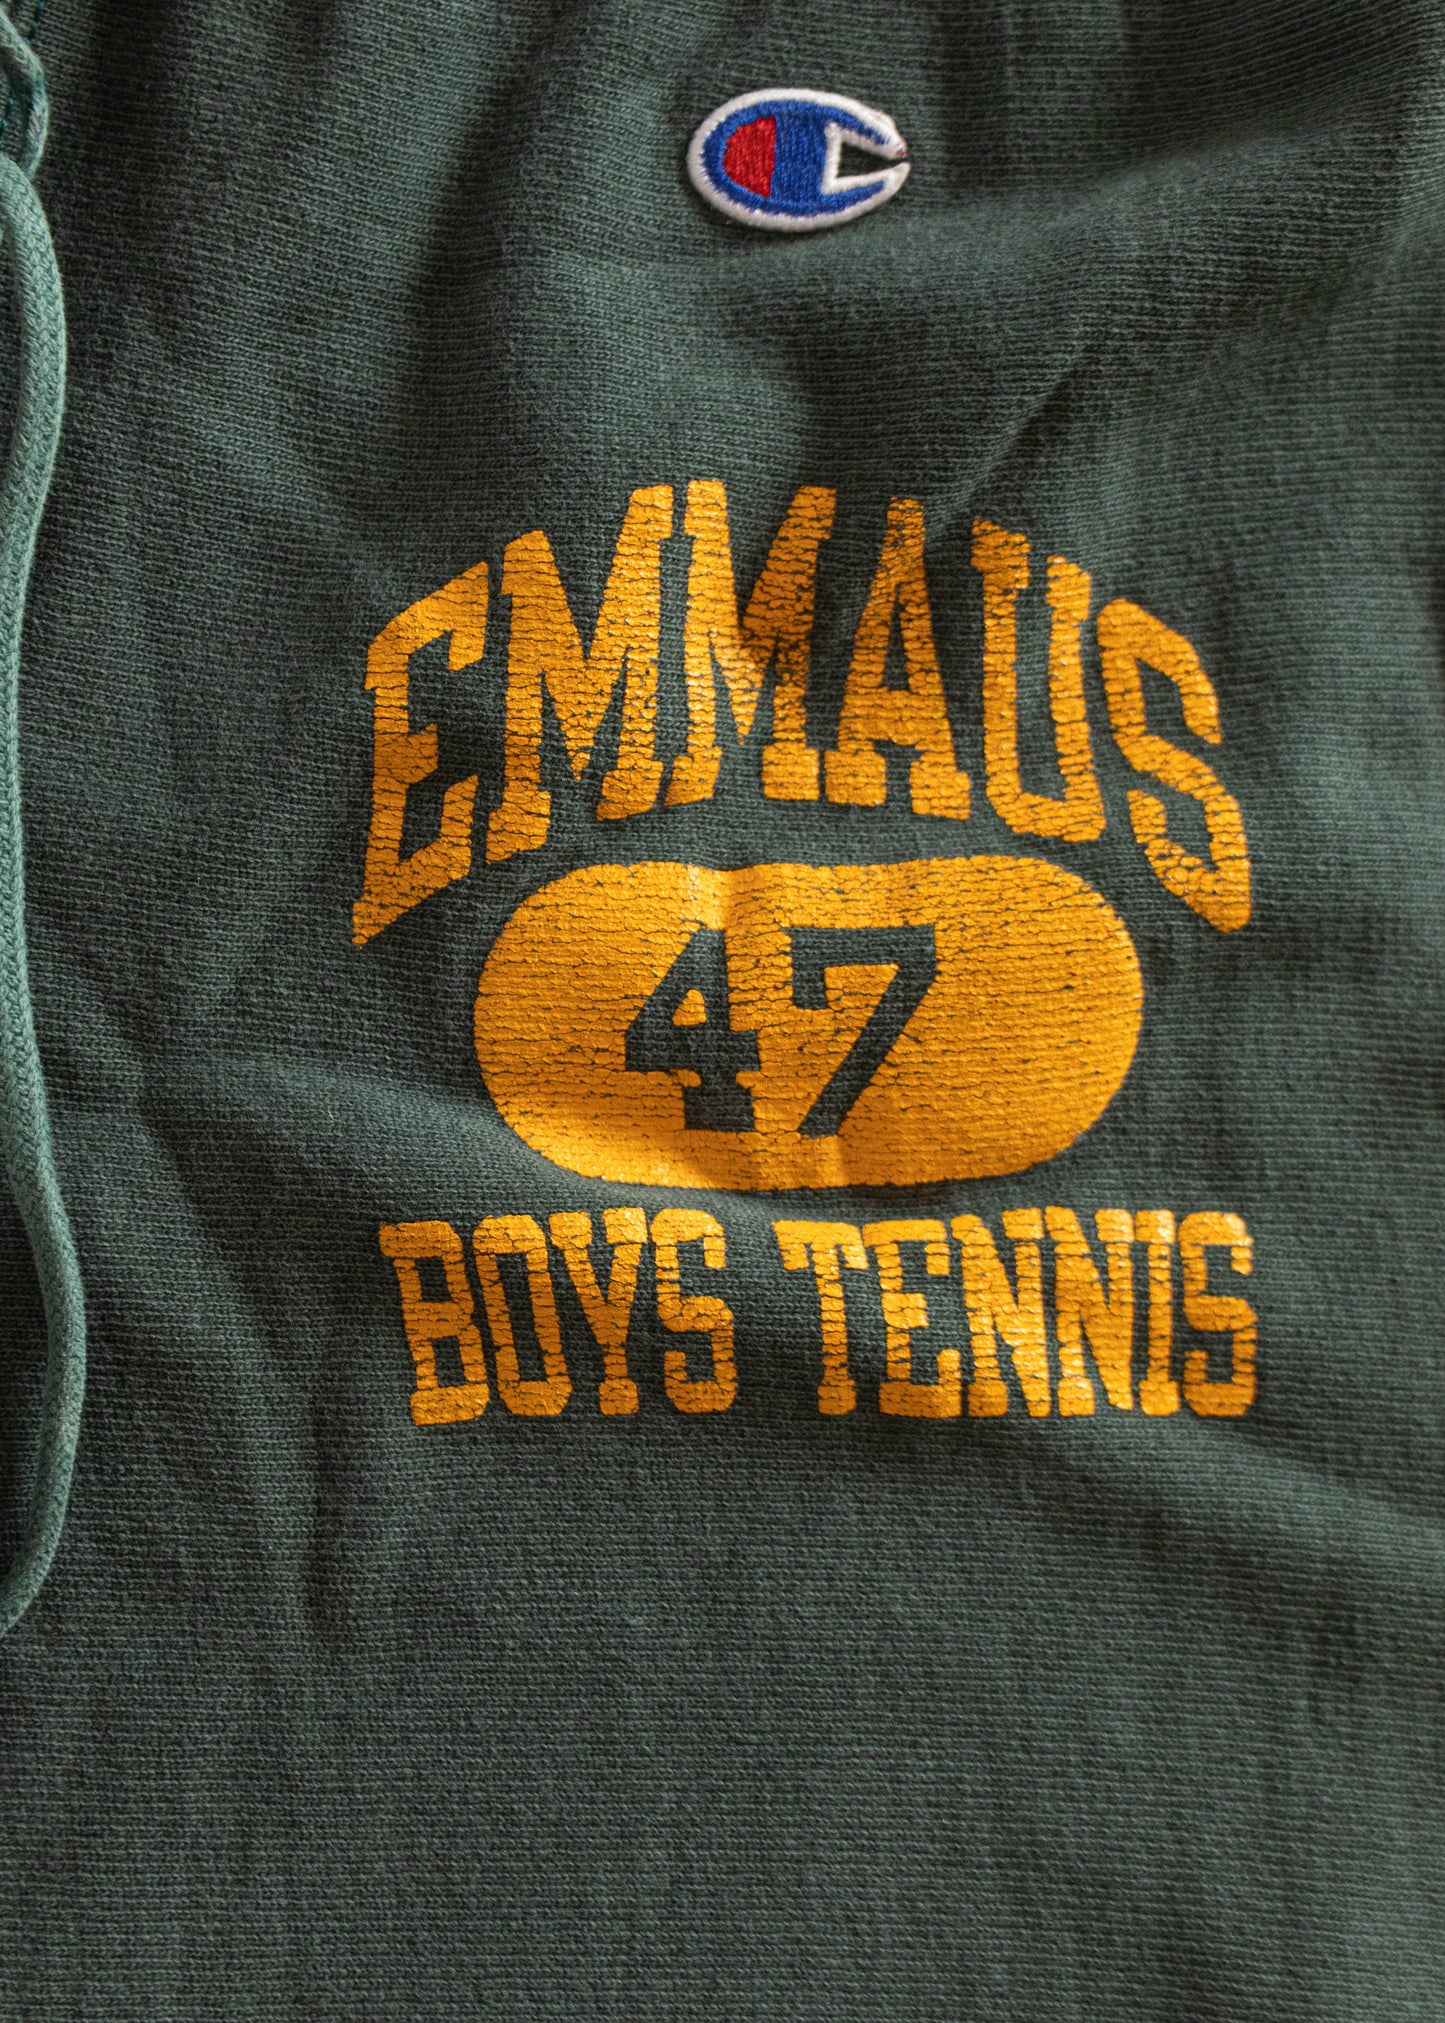 1970s Champion Emmaus Boys Tennis Reverse Weave Sweatpants Size S/M